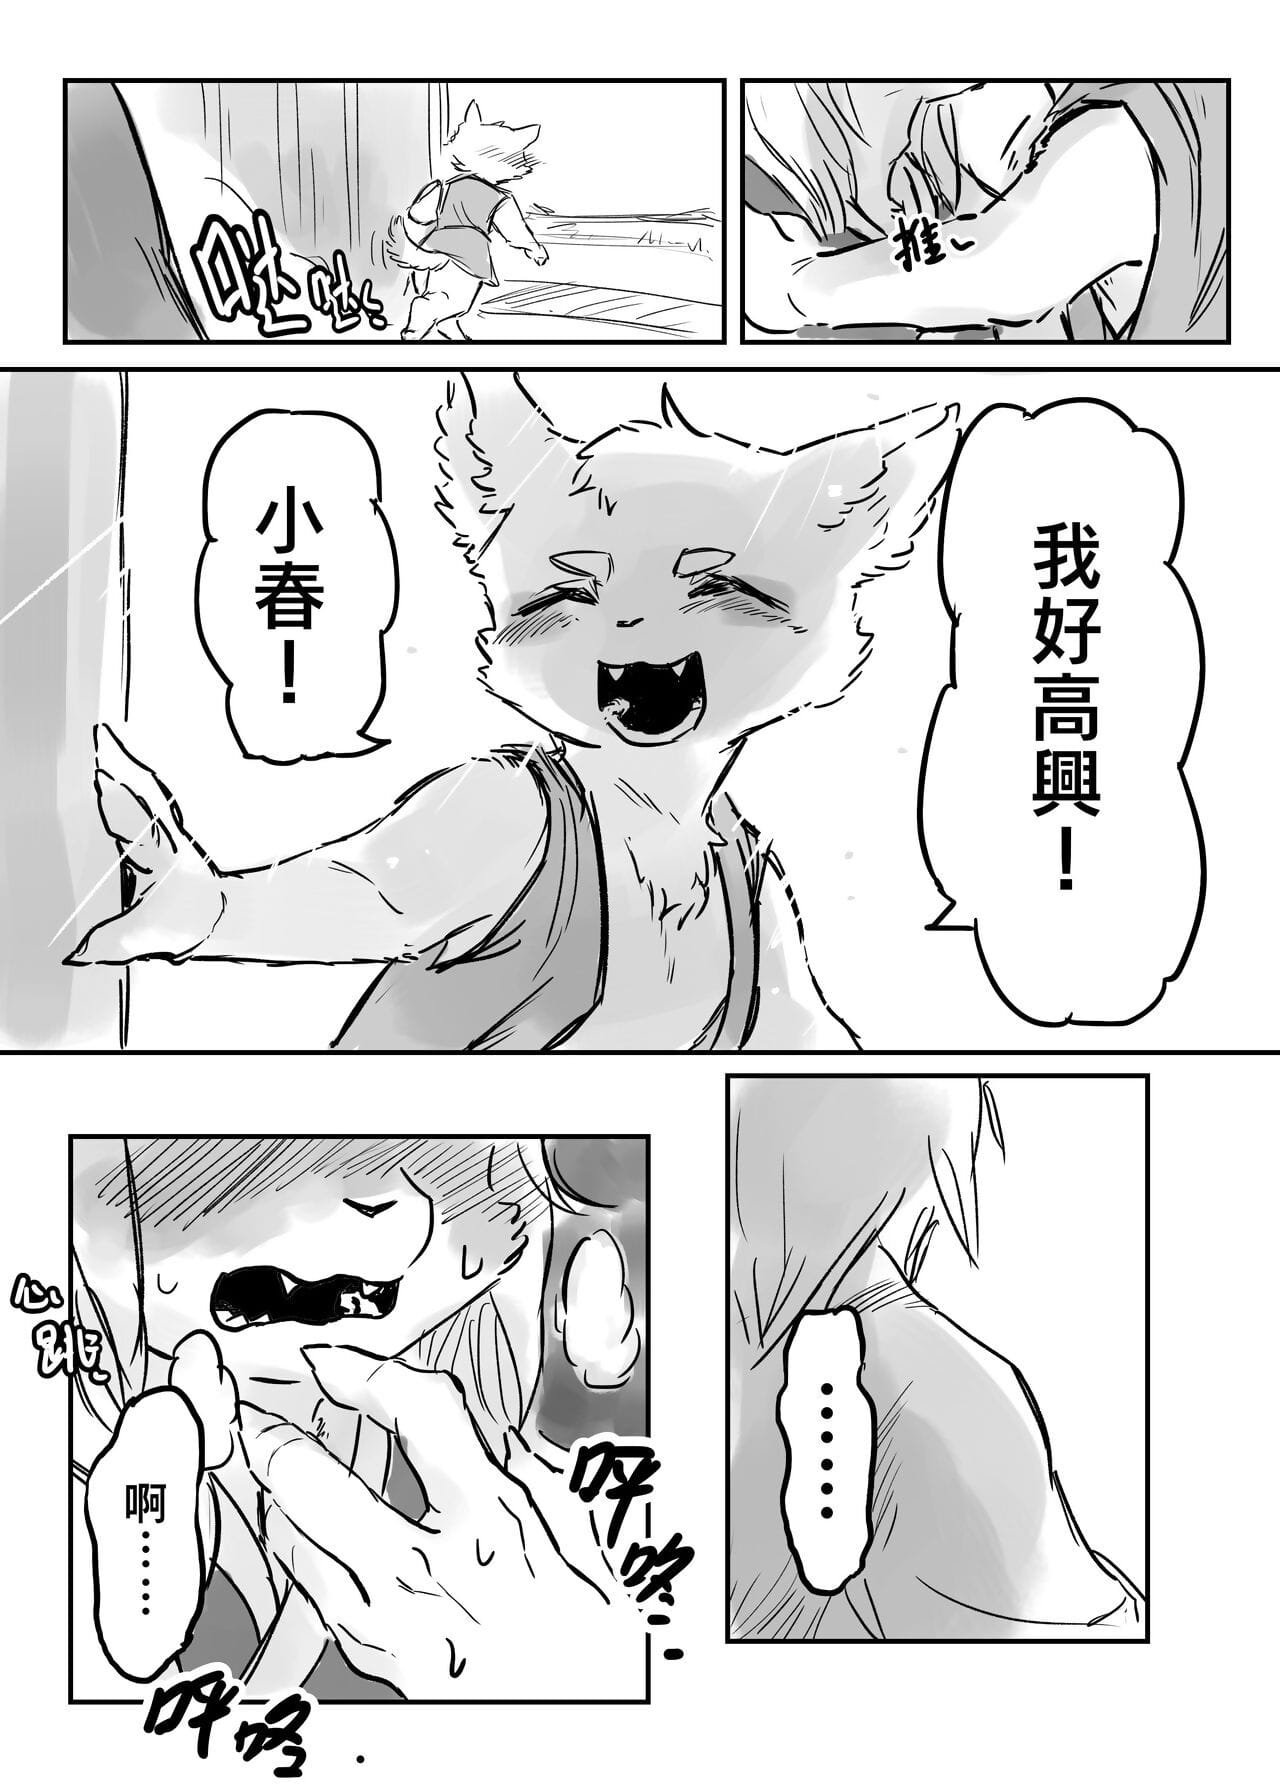 （the bezoeker 他乡之人 by：鬼流 Onderdeel 2 page 1